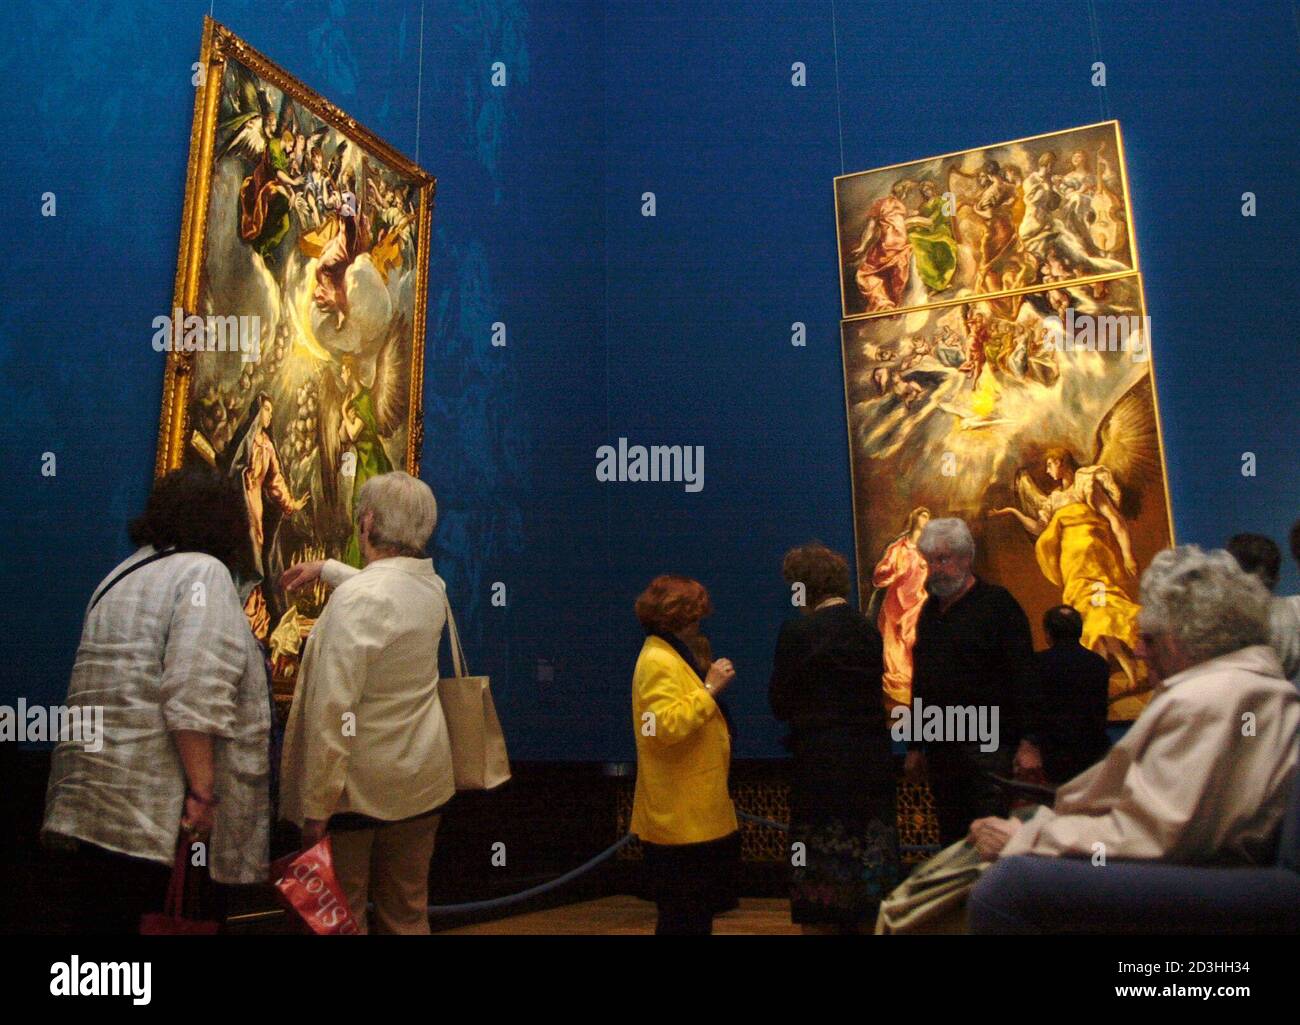 Im Kunsthistorischen Museum in Wien findet vom 4. Mai bis zum 2. September 2001 die Sonderausstellung 'El Greco' statt. Die Ausstellung ist taeglich von 10 bis 18 Uhr, Donnerstags zusaetzlich bis 22 Uhr geoeffnet.  HP/ Stock Photo